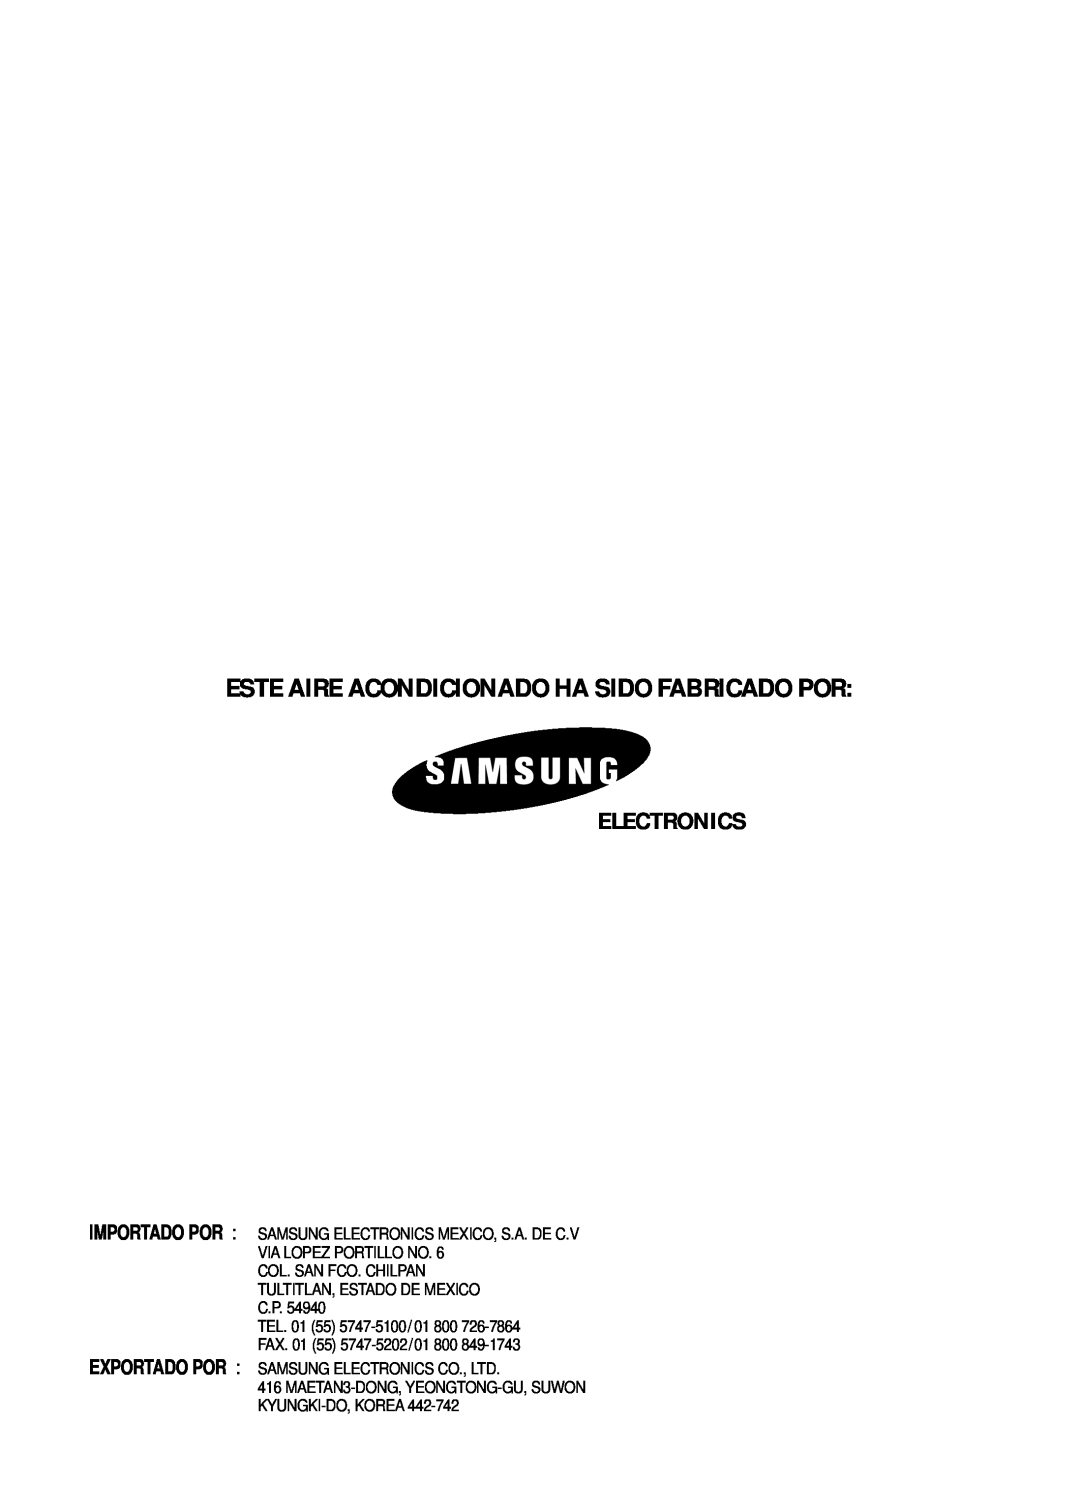 Samsung IAS24W6WE/AFR, IAS18WJWE/AFR manual Electronics, Este Aire Acondicionado Ha Sido Fabricado Por 